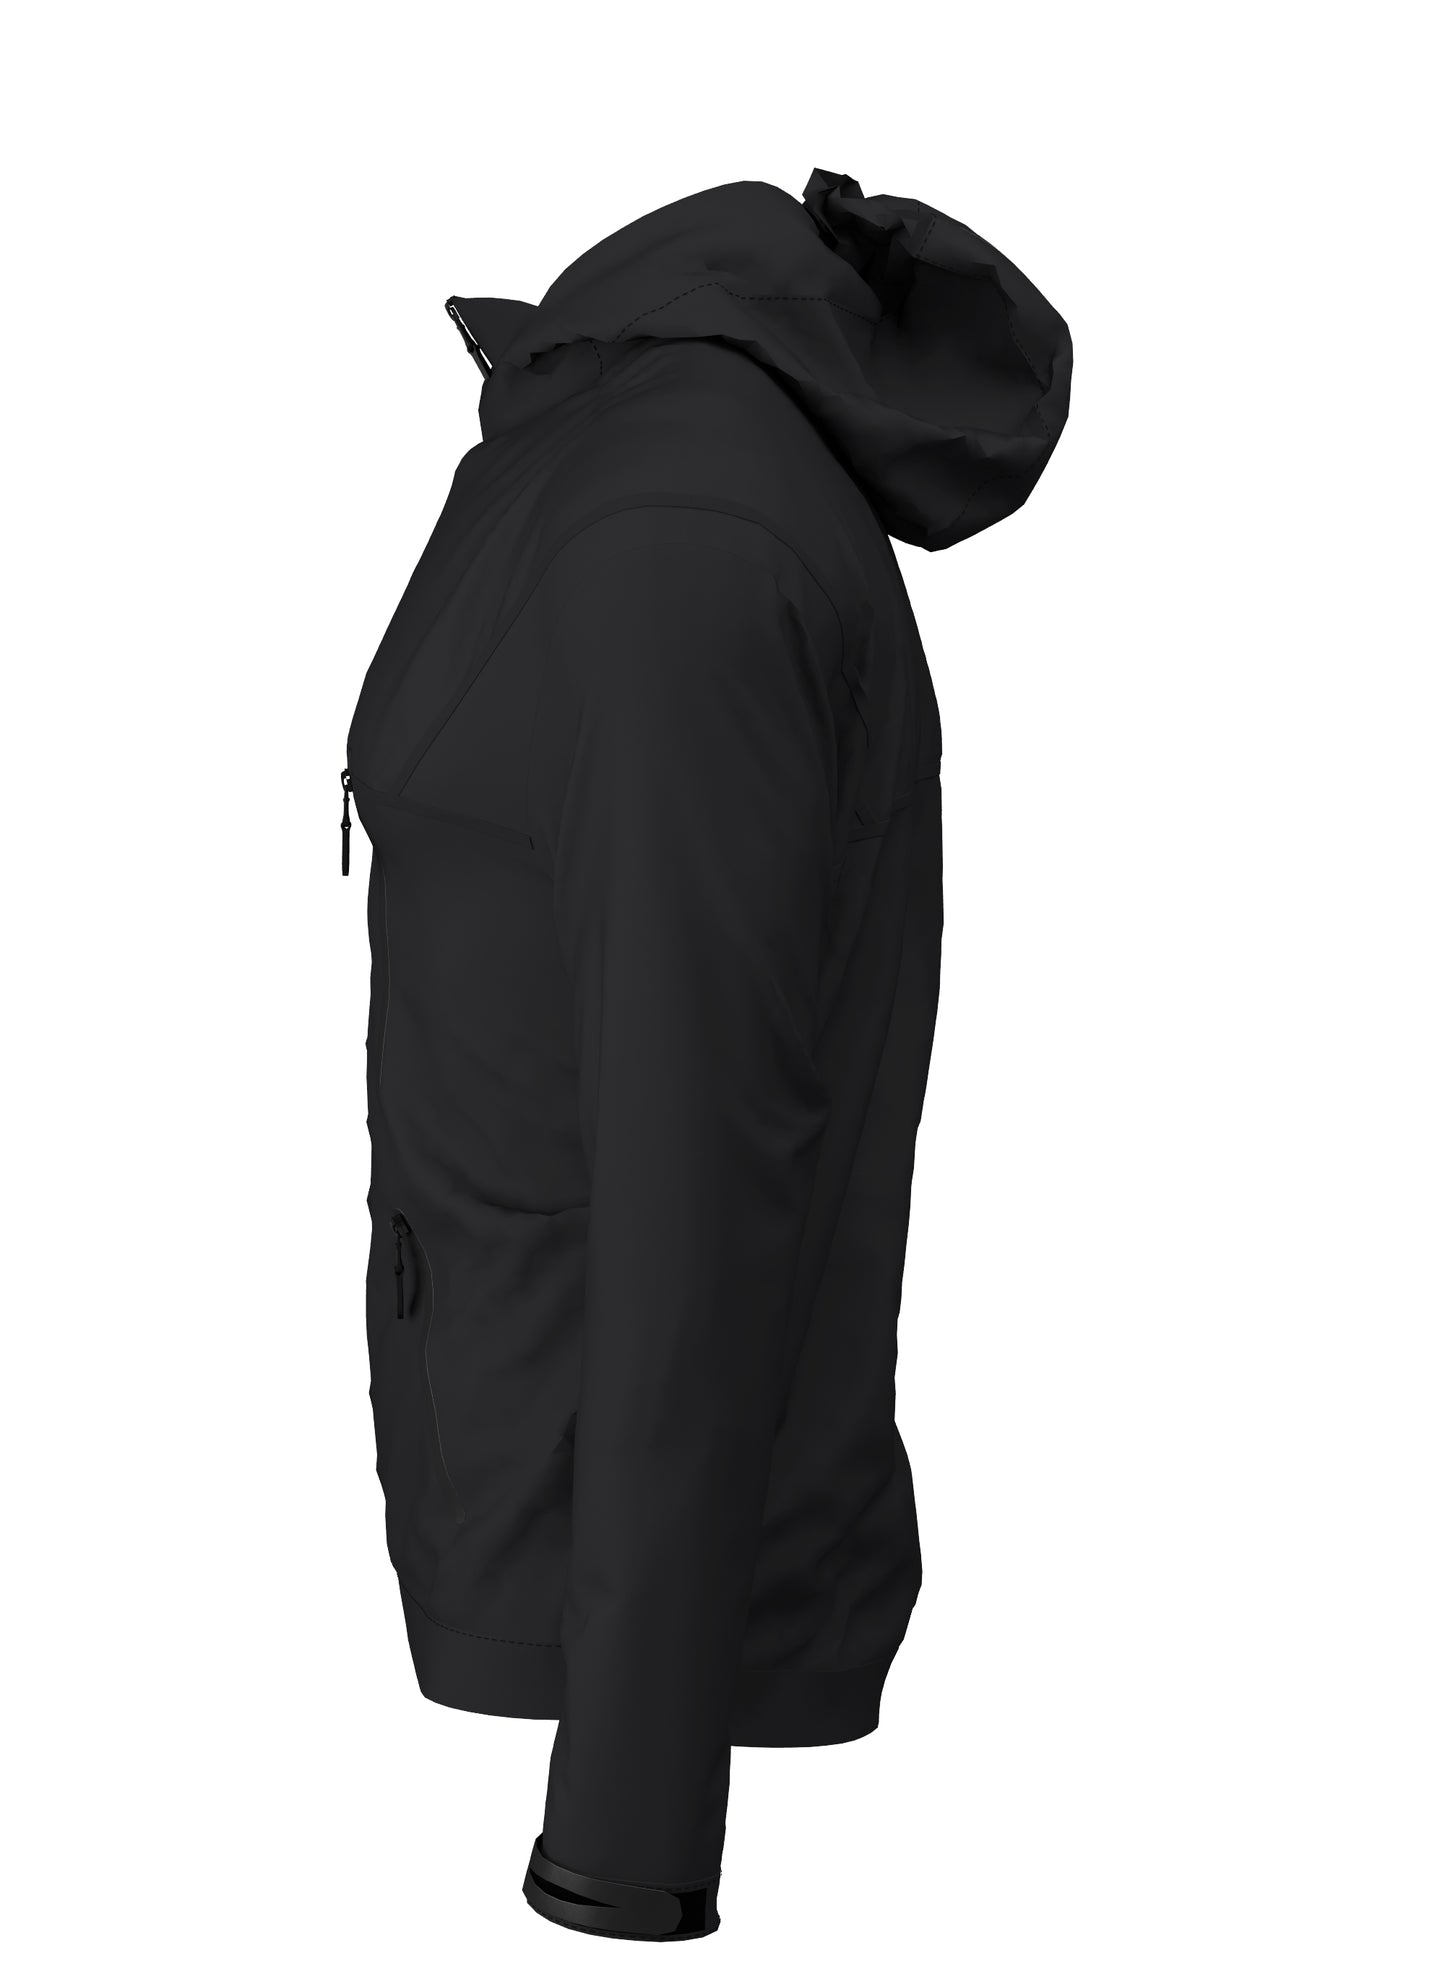 Elite Tech Waterproof Jacket - Black/Black